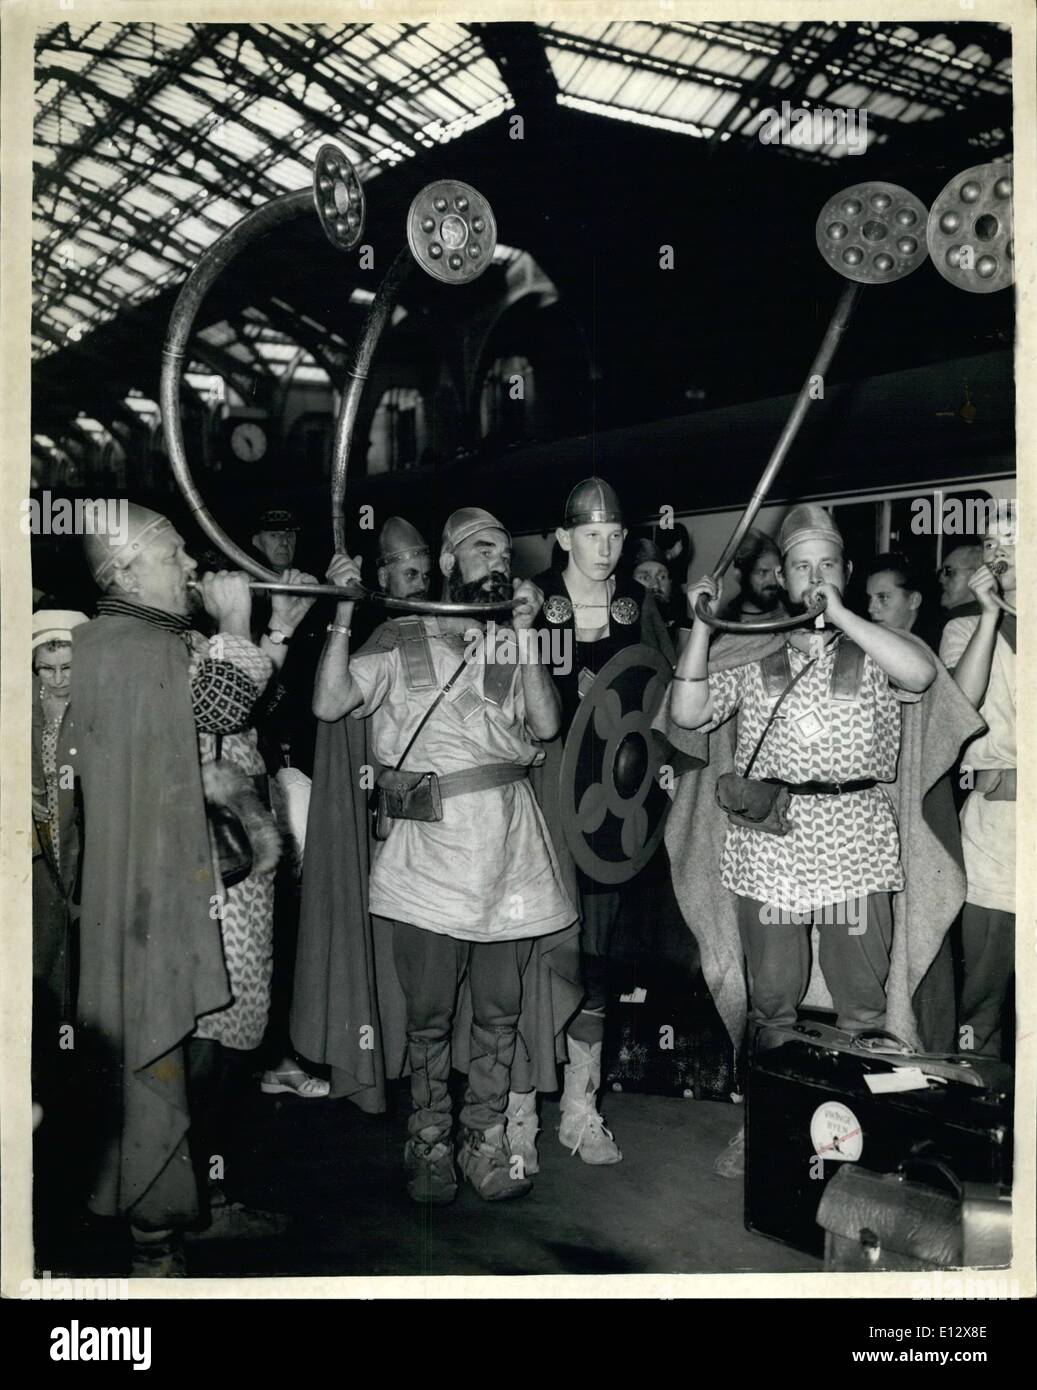 25 février 2012 - les "Vikings" arrivent à Londres - en route vers Ramsgate. Environ 100 acteurs amsteur frederikessund - vikings du Danemark,, - arrivé à Londres ce matin par train - et se rendent en Roamsgate plus tard aujourd'hui en bus. Pour simplifier l'assurance problème plus tard aujourd'hui à leurs costumes - car ils sont à présent ''La saga de Amled'' - qui a Shakespearean connexions - à Romagate. La photo montre certains des Vikings soufflant leurs cornes pour saluer Londres - à leur arrivée à la gare de Liverpool street ce matin. Banque D'Images